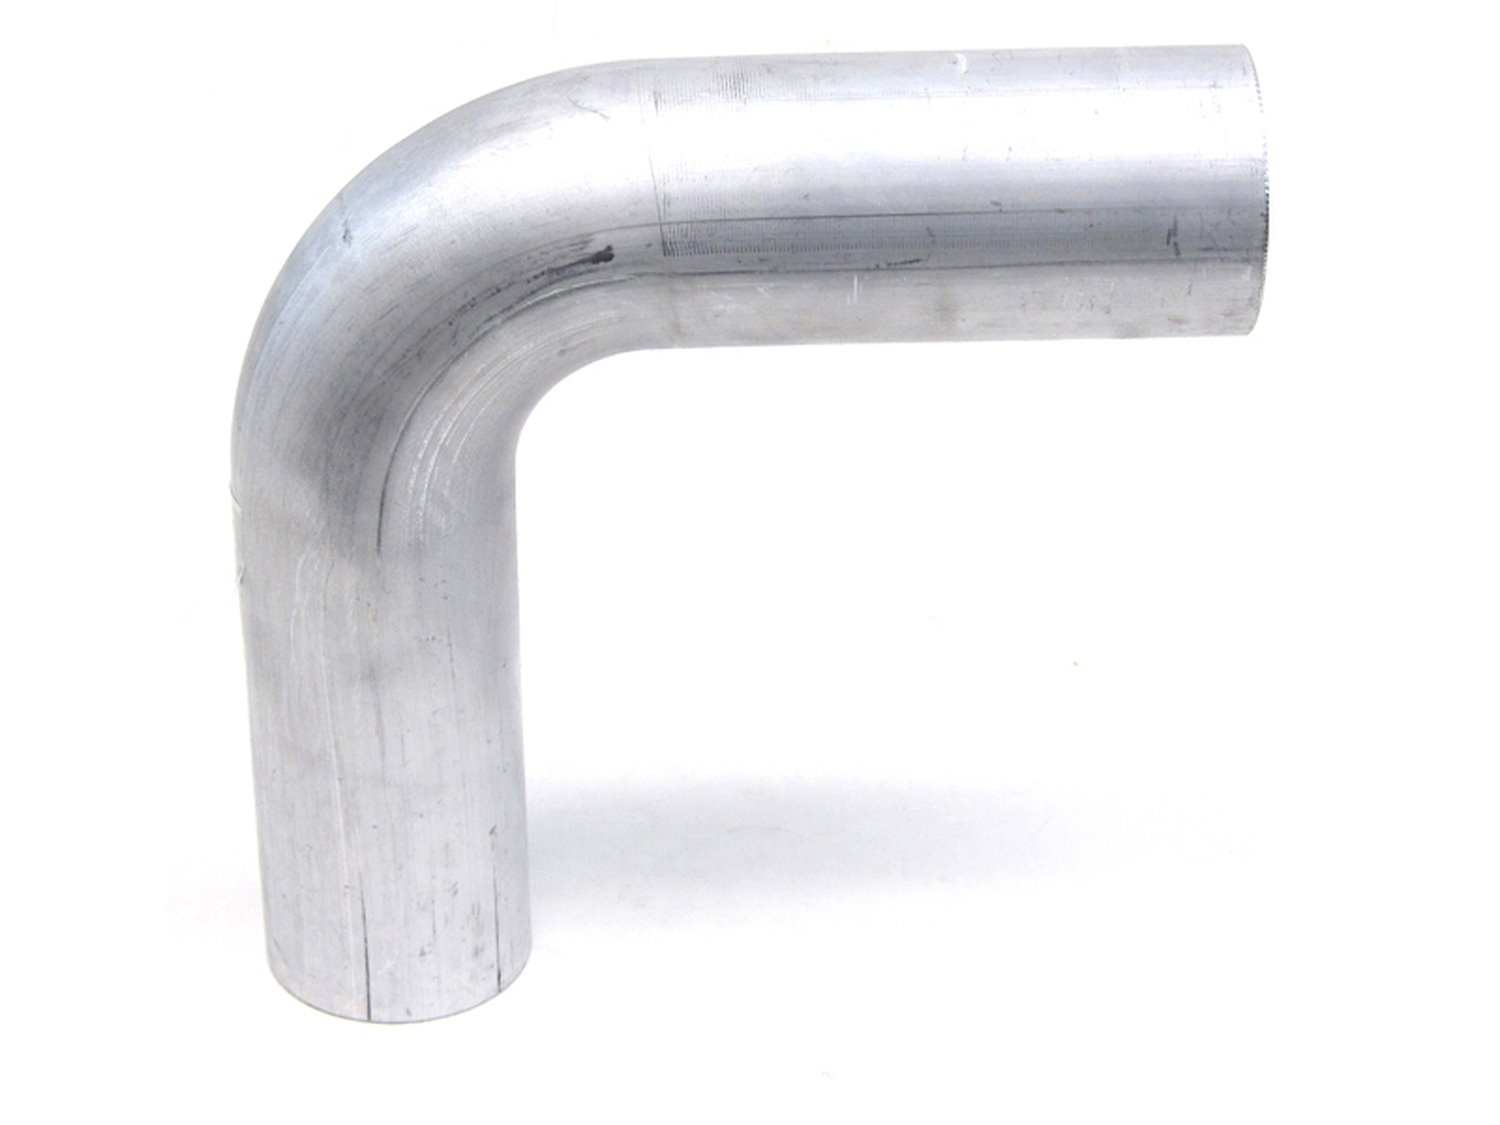 AT90-350-CLR-56 Aluminum Elbow Tube, 6061 Aluminum, 90-Degree Bend Elbow Tubing, 3-1/2 in. OD, Large Radius, 5-5/8 in. CLR